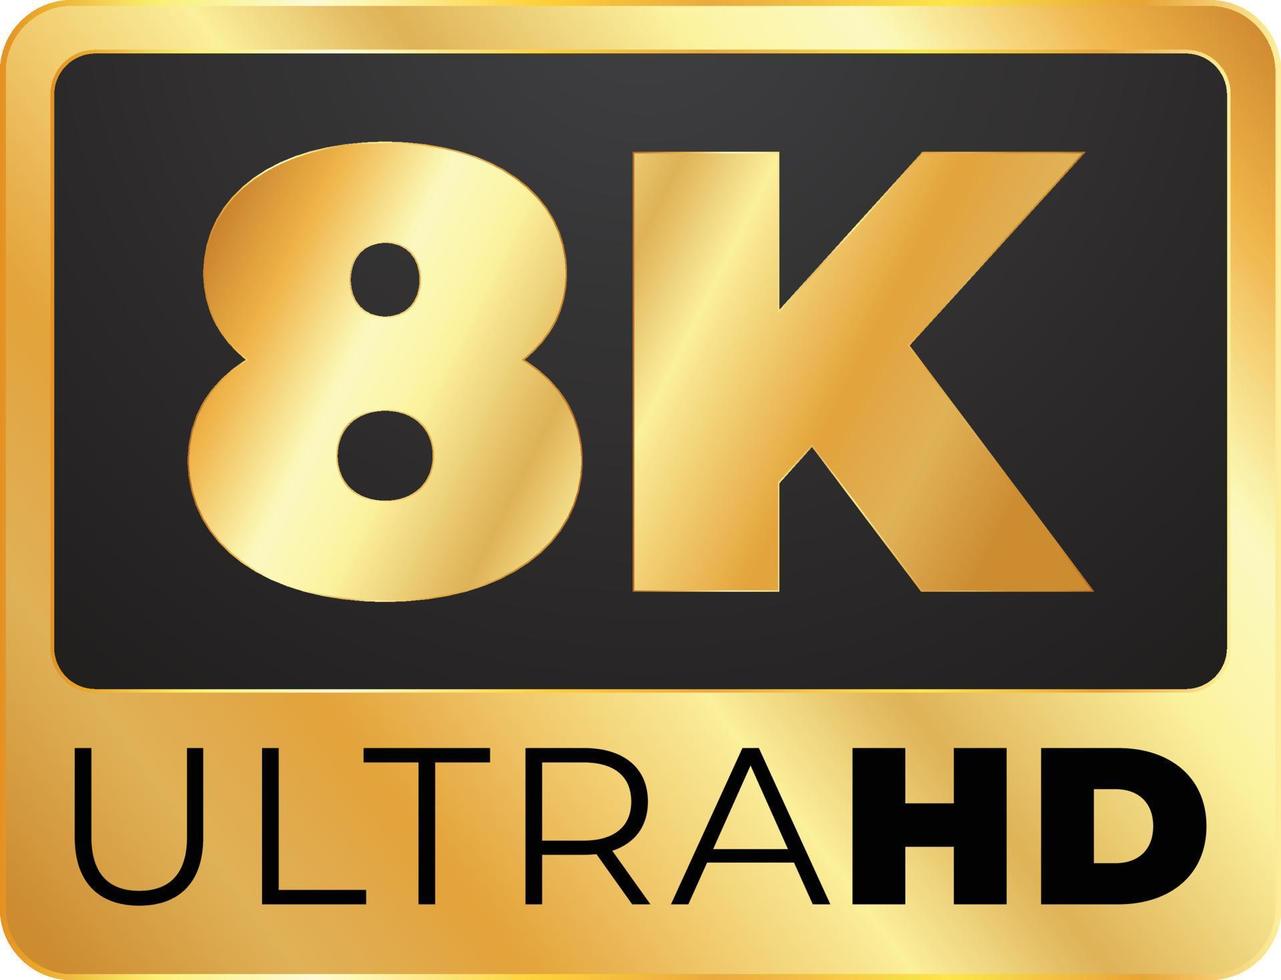 8k resolución ultra hd logo, 8k alto definición vector ilustración, 8k ultra hd dorado etiqueta